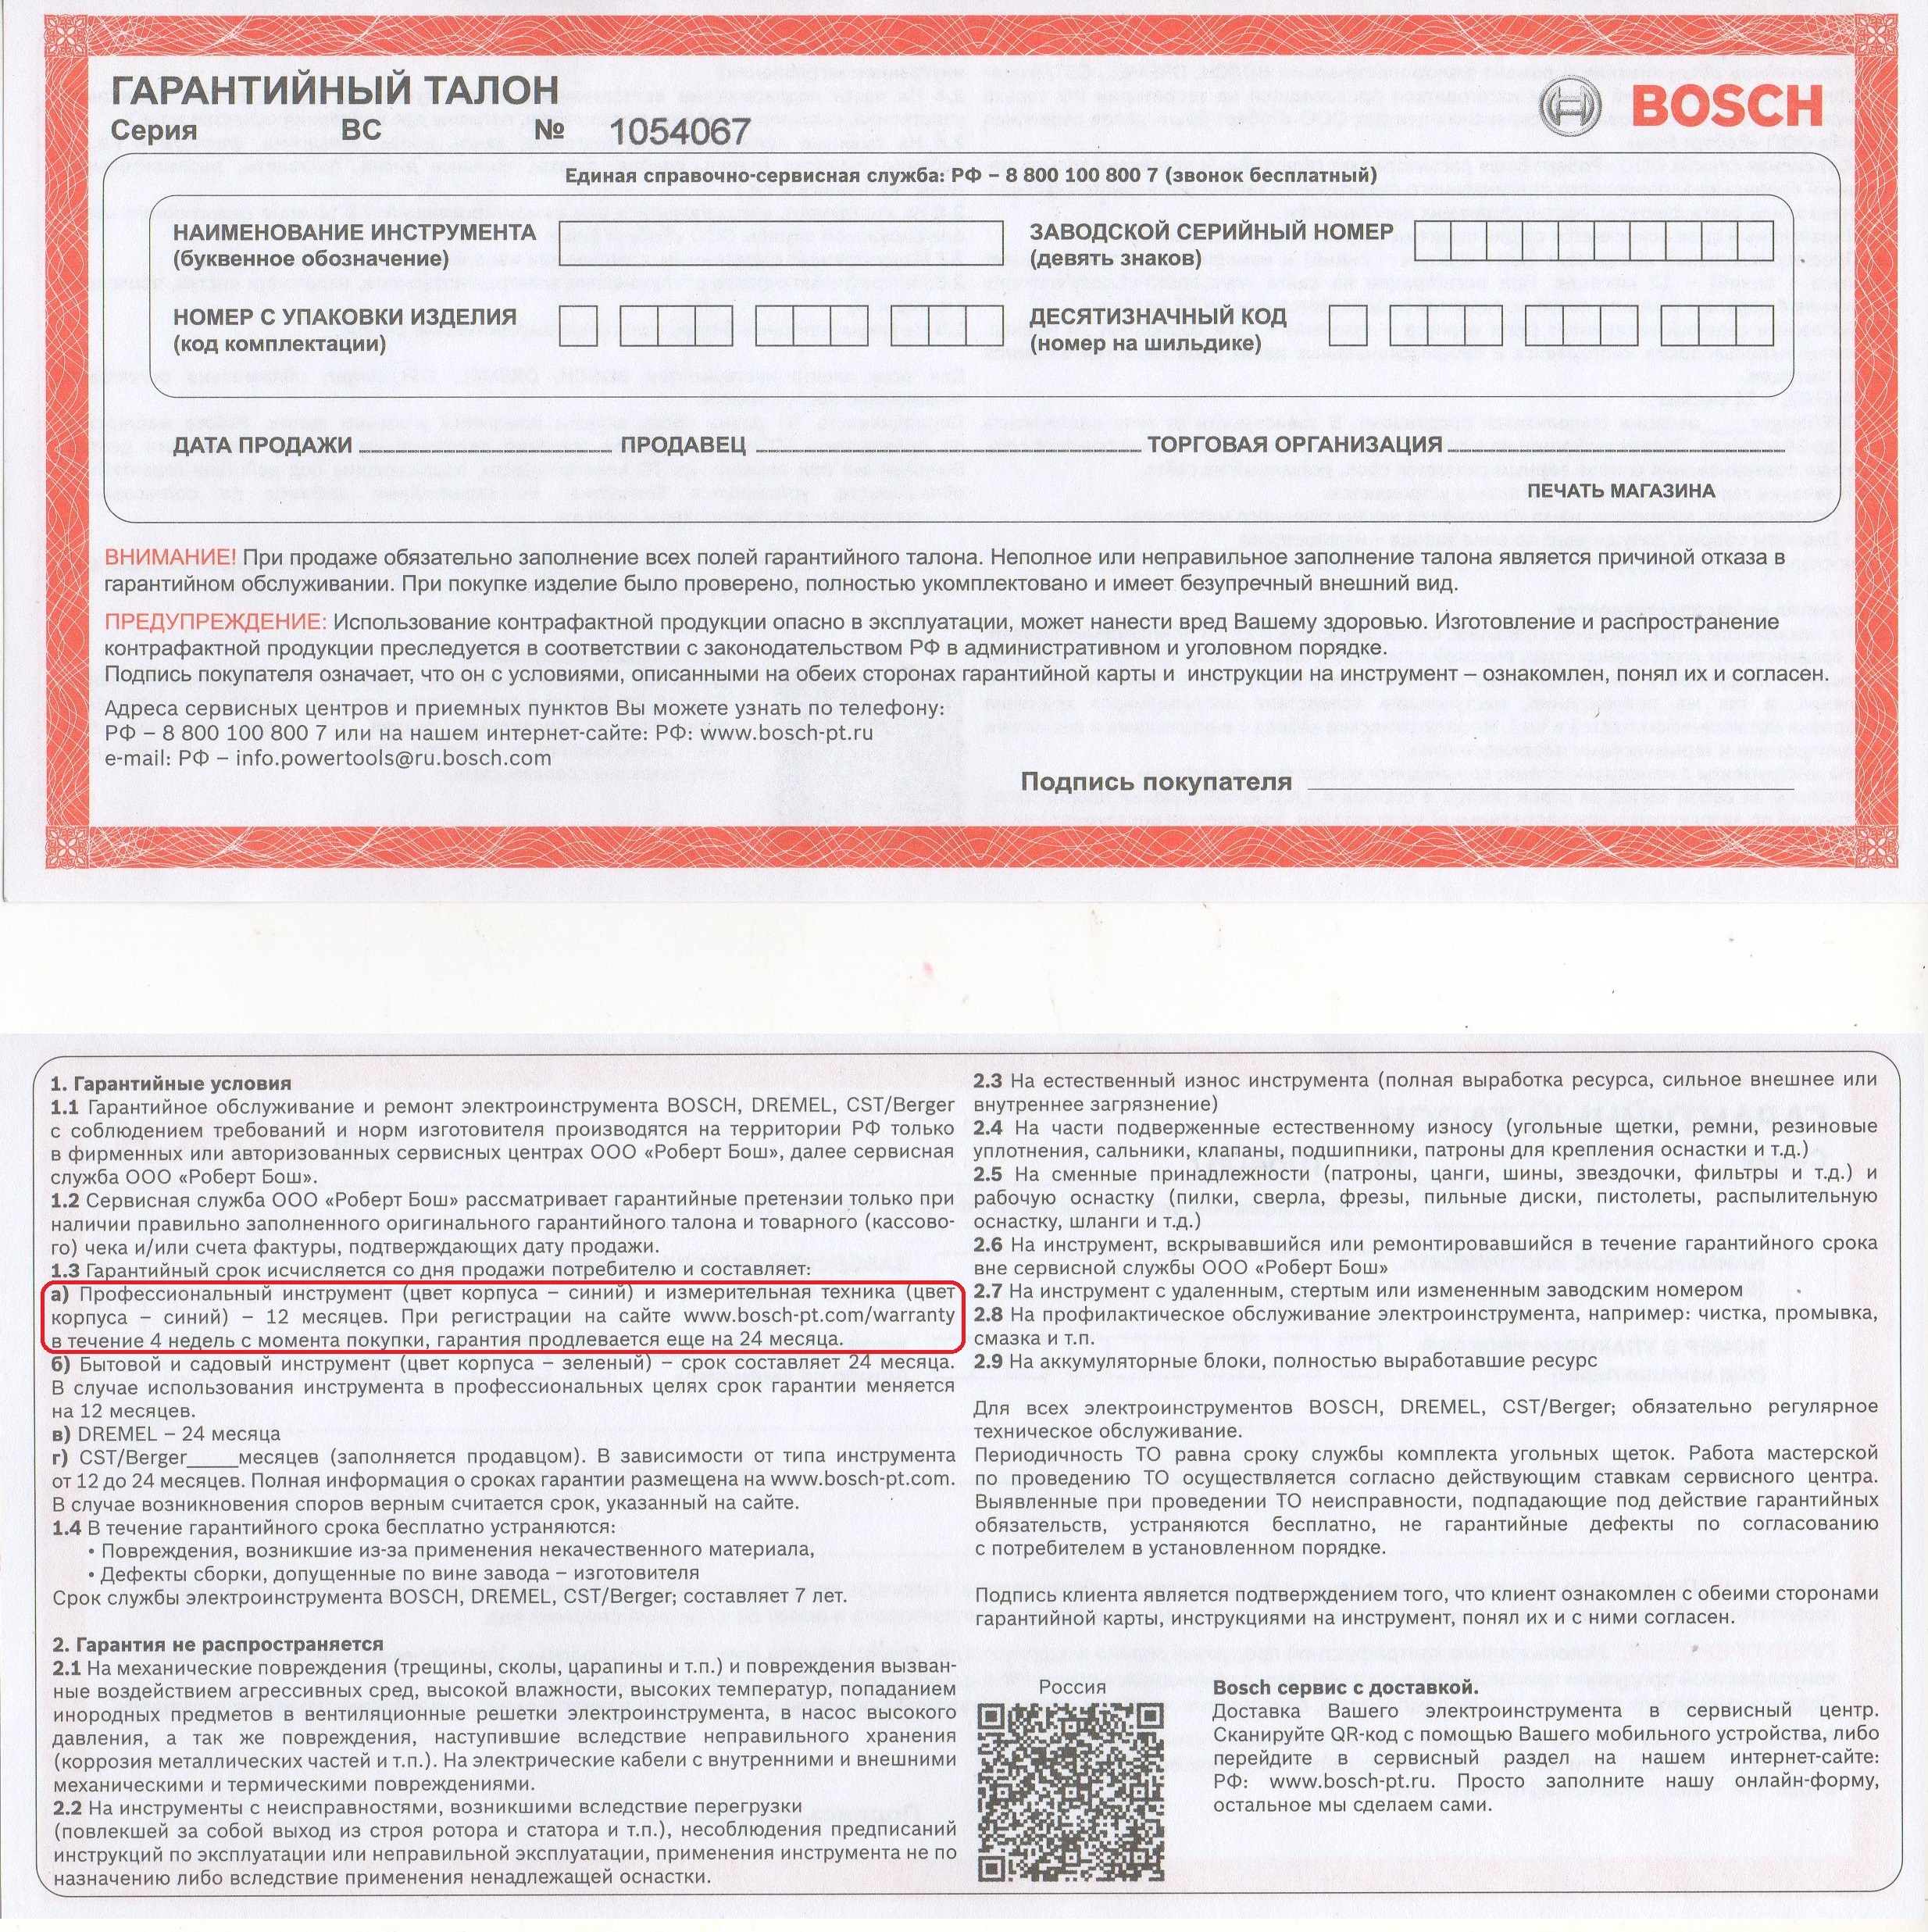 Образец гарантийного талона Bosch